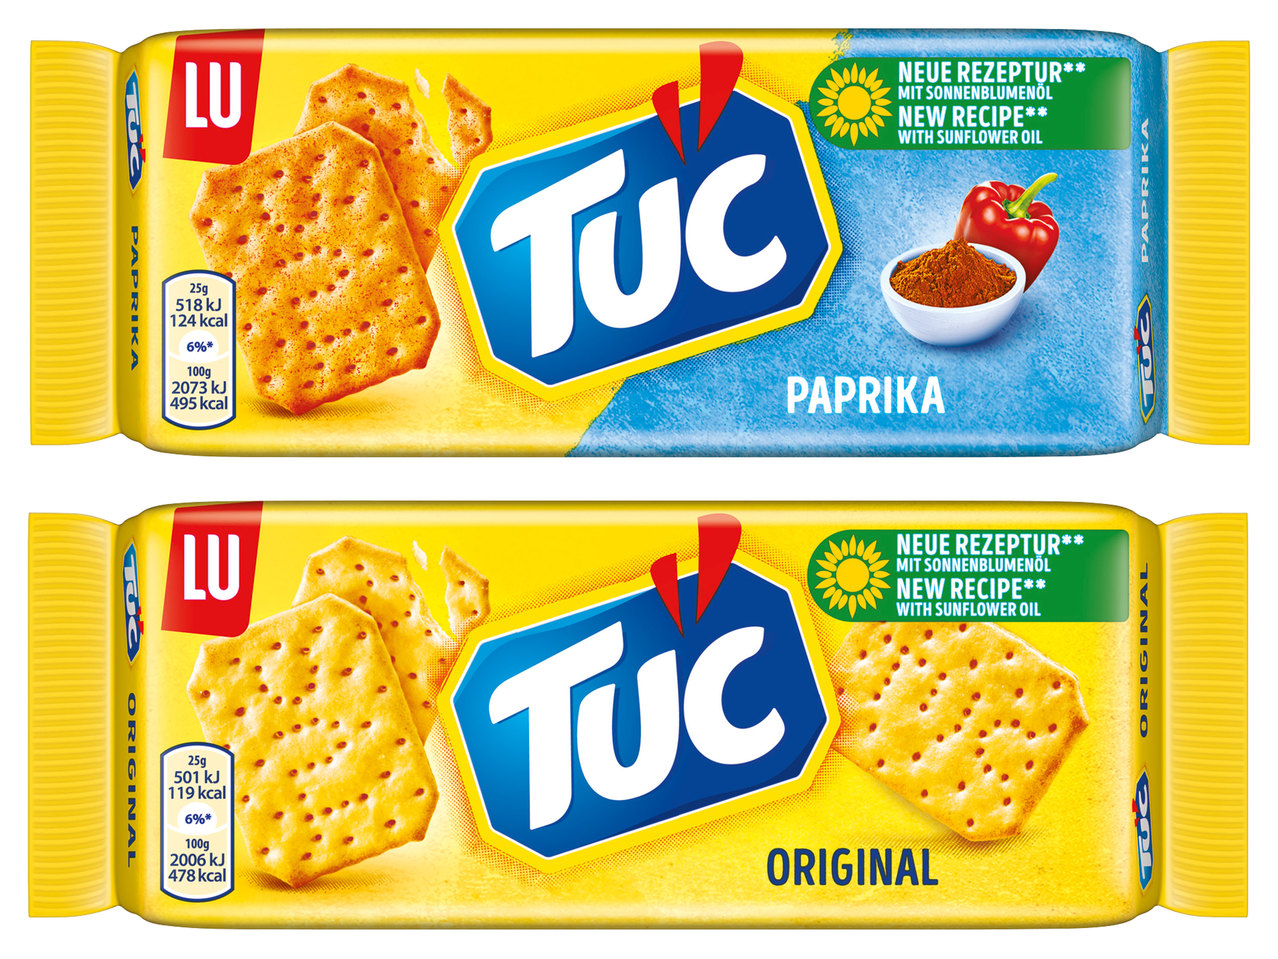 TUC Original, Paprika oder Sour Cream & Onion